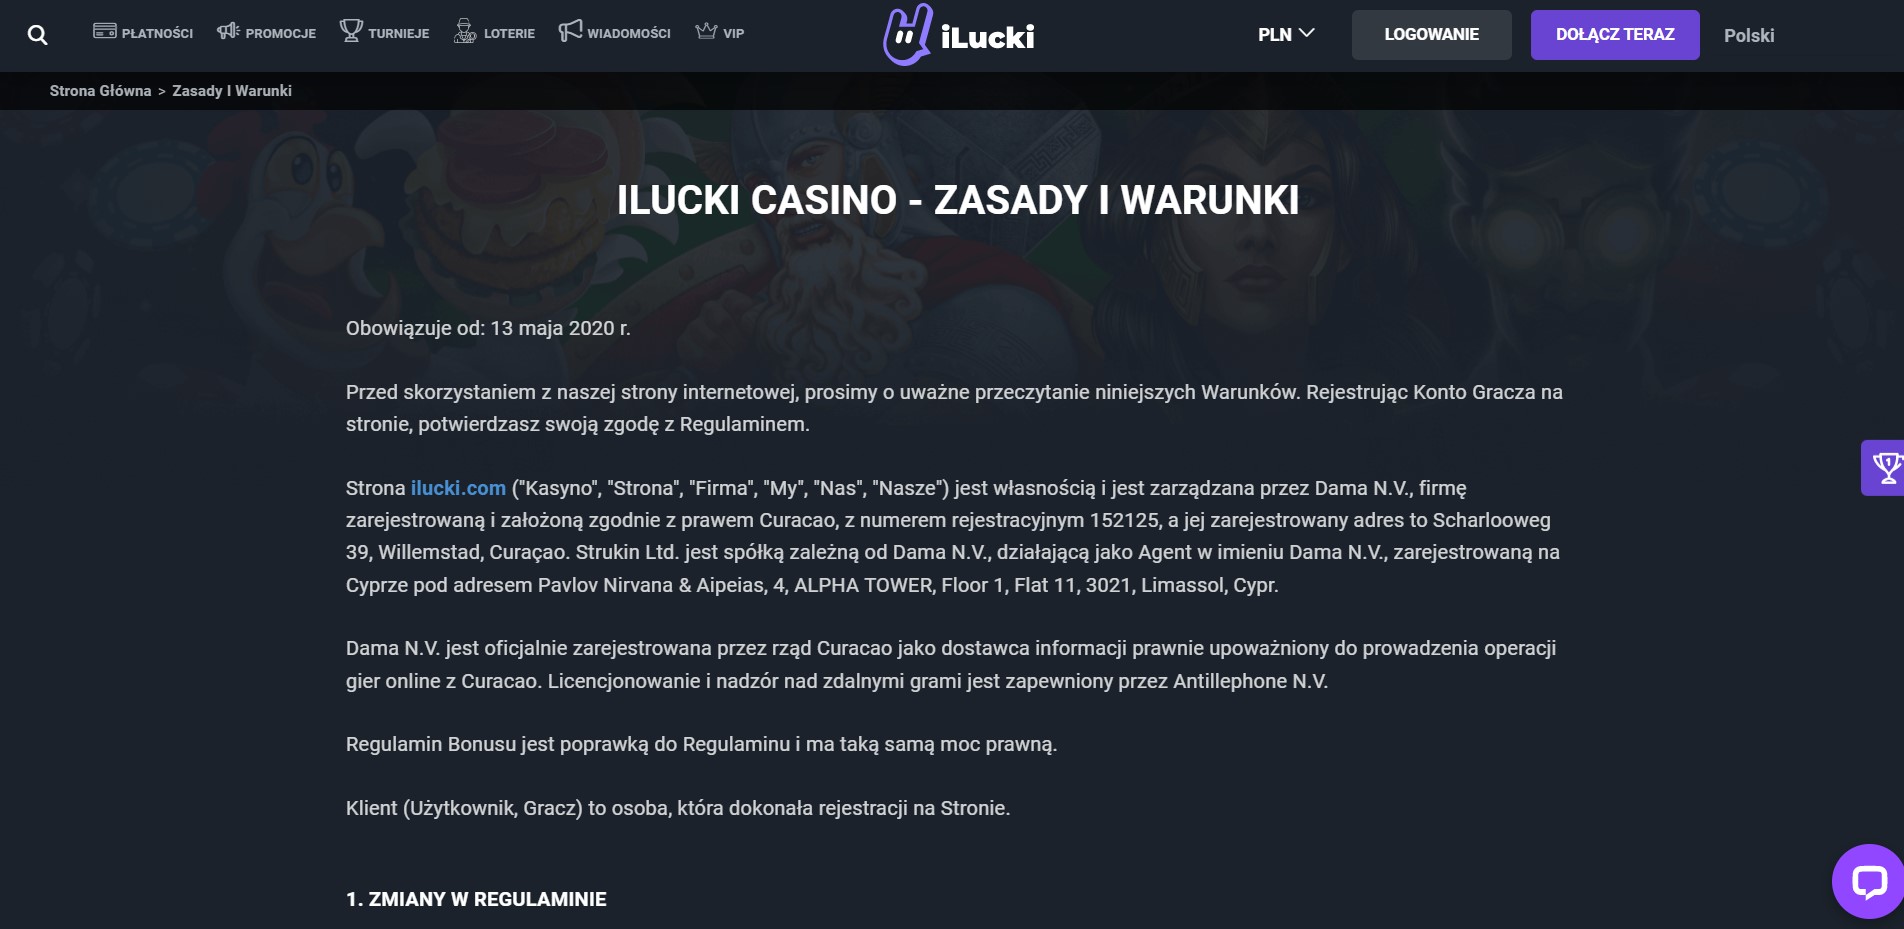 iLucki Casino Review